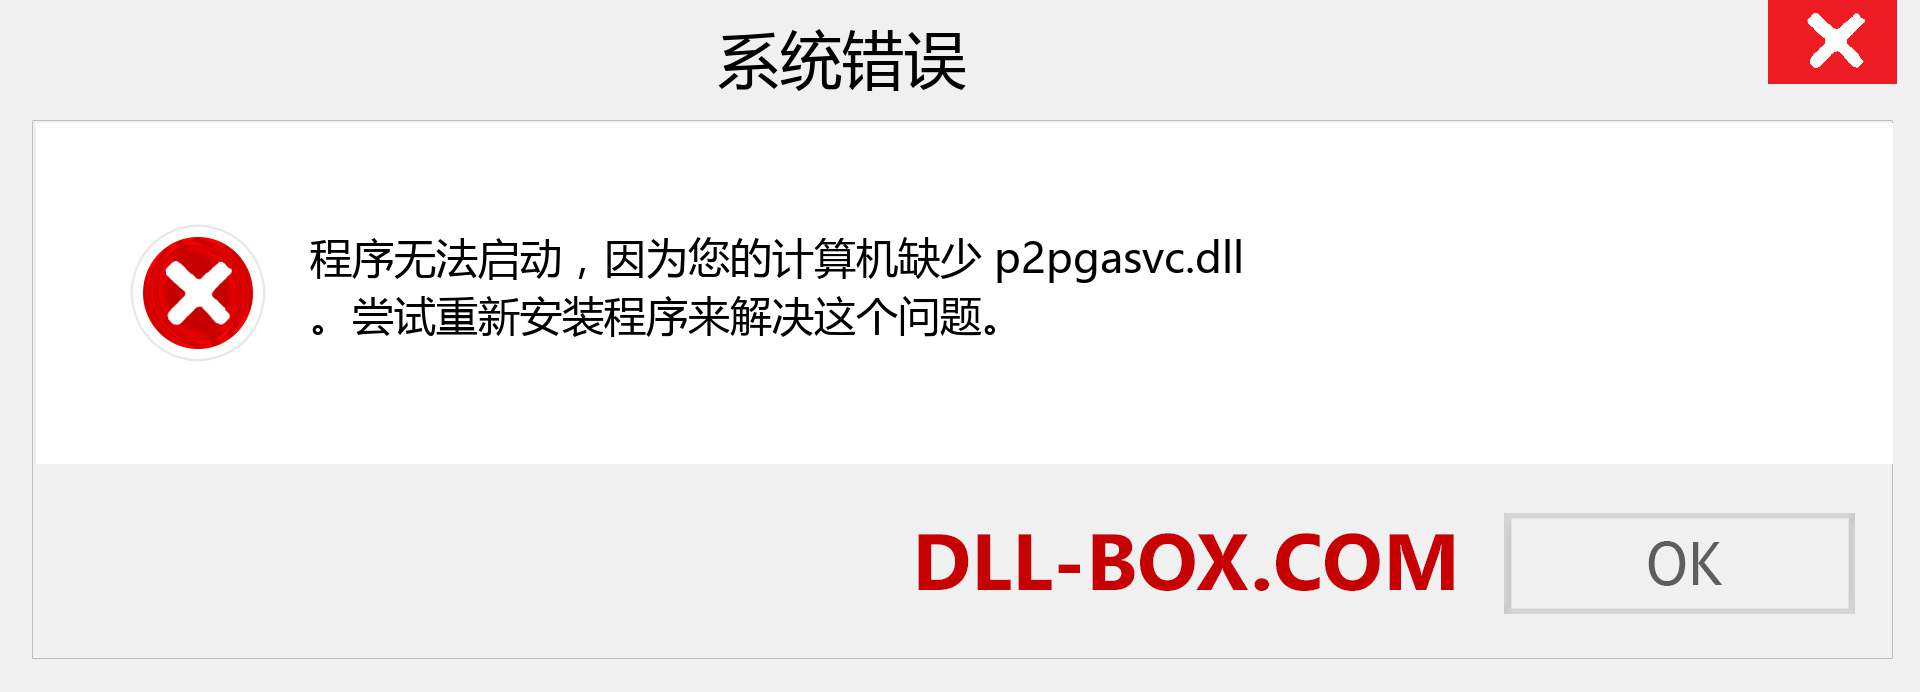 p2pgasvc.dll 文件丢失？。 适用于 Windows 7、8、10 的下载 - 修复 Windows、照片、图像上的 p2pgasvc dll 丢失错误